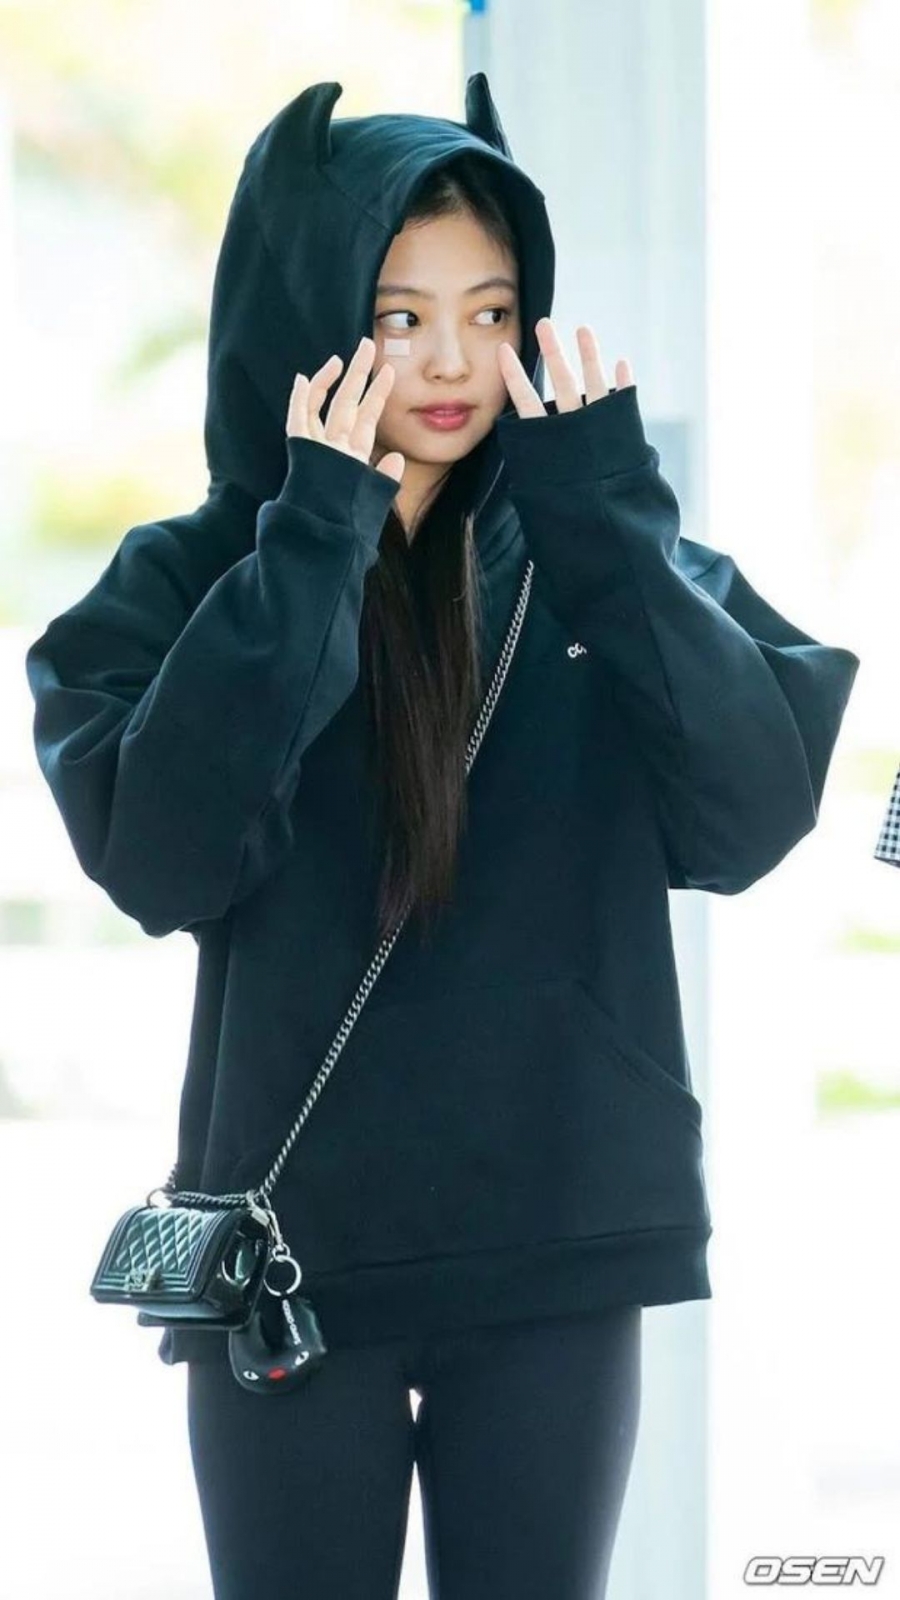 Phong cách thời trang của Jennie tại sân bay luôn là đề tài được người hâm mộ nói về nhiều mỗi khi xuất hiện.